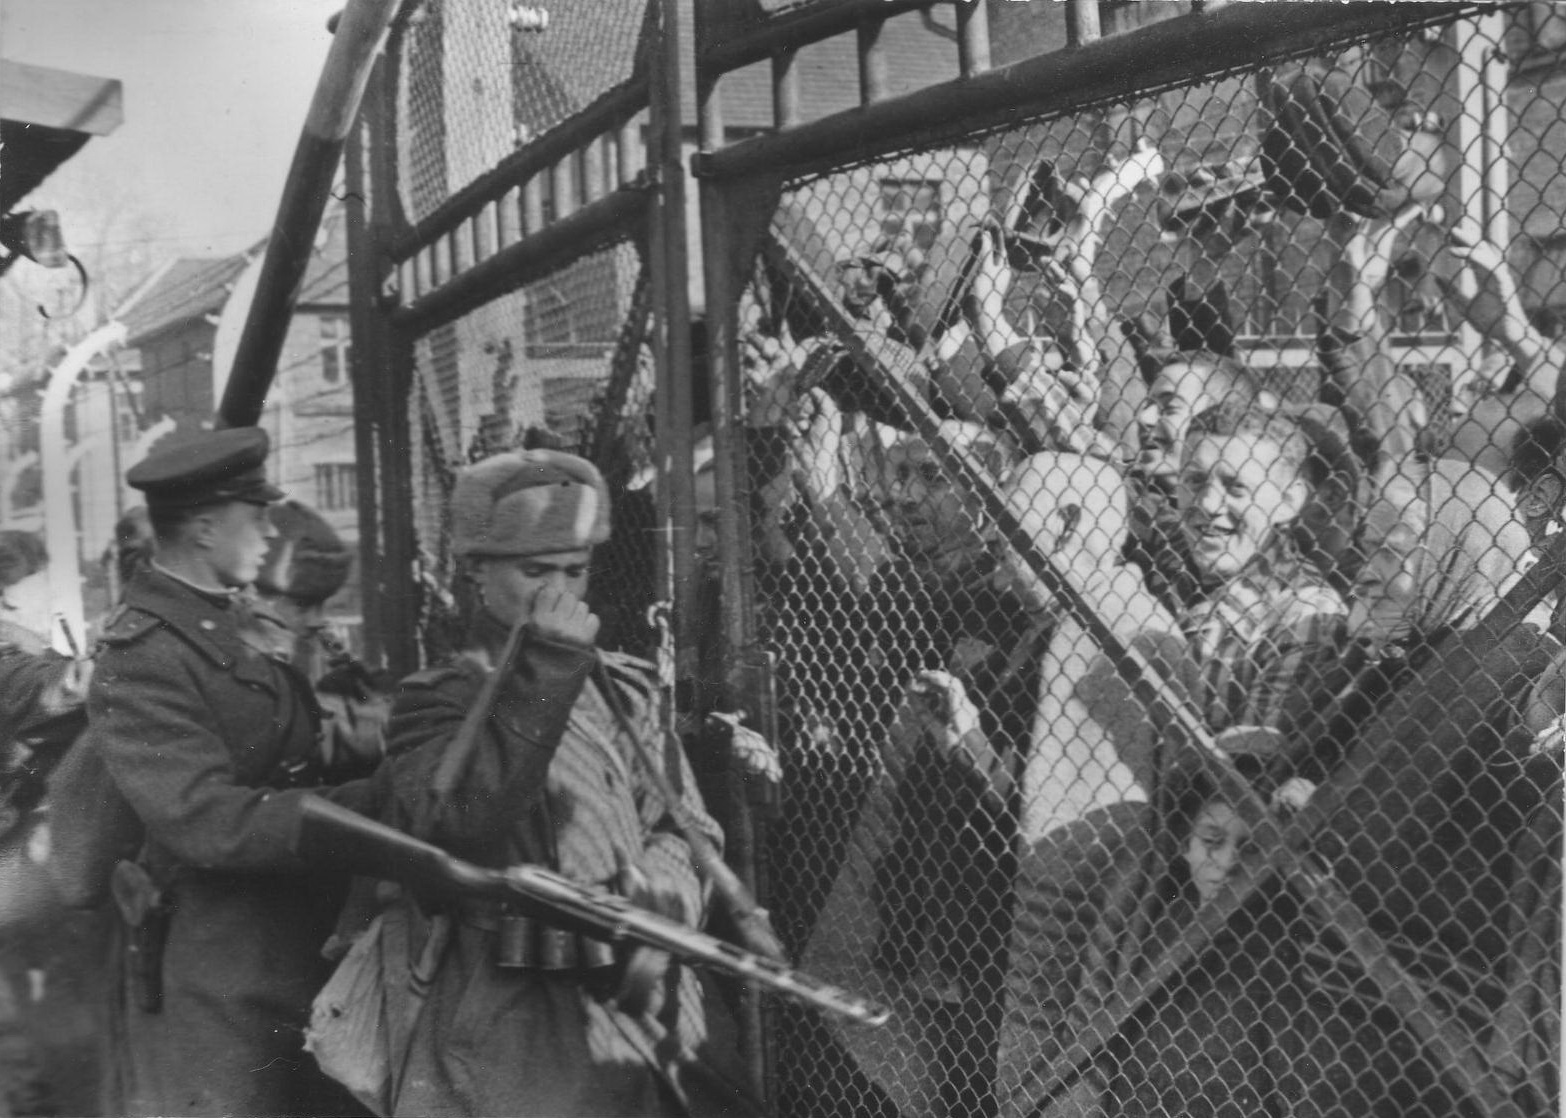 27 Января 1945 освобождение концлагеря Освенцим